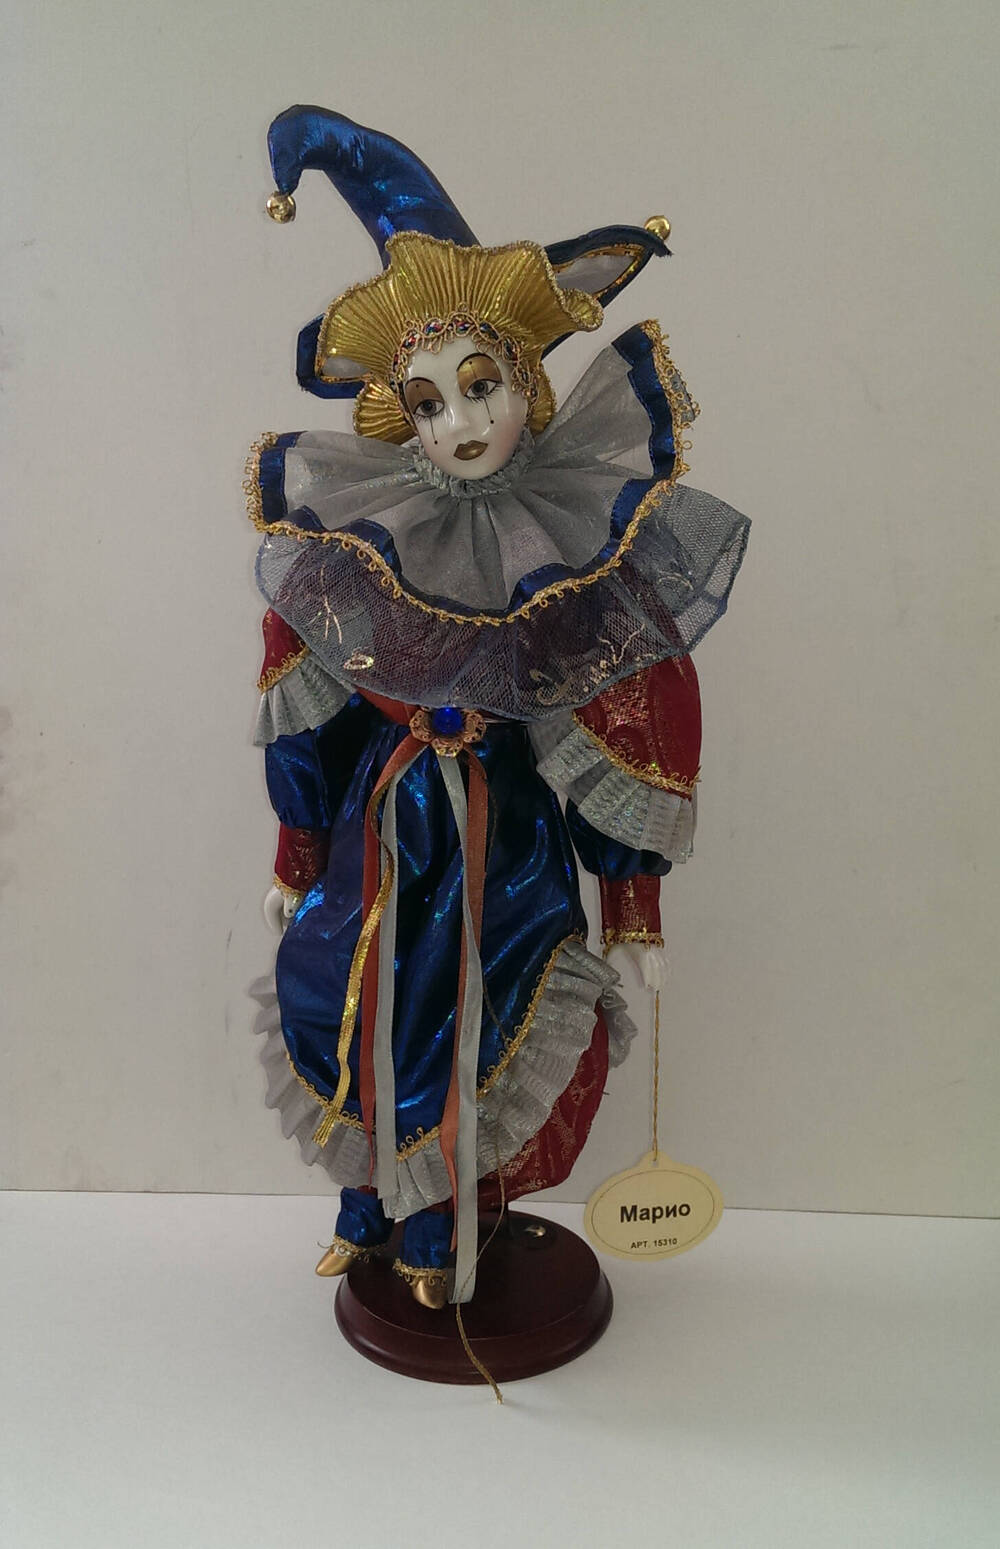 Марио. Кукла из Коллекции кукол ручной работы с фарфоровыми элементами «Арлекин» компании «Ремеко», Великобритания (Remeco HARLEQUIN Collection).